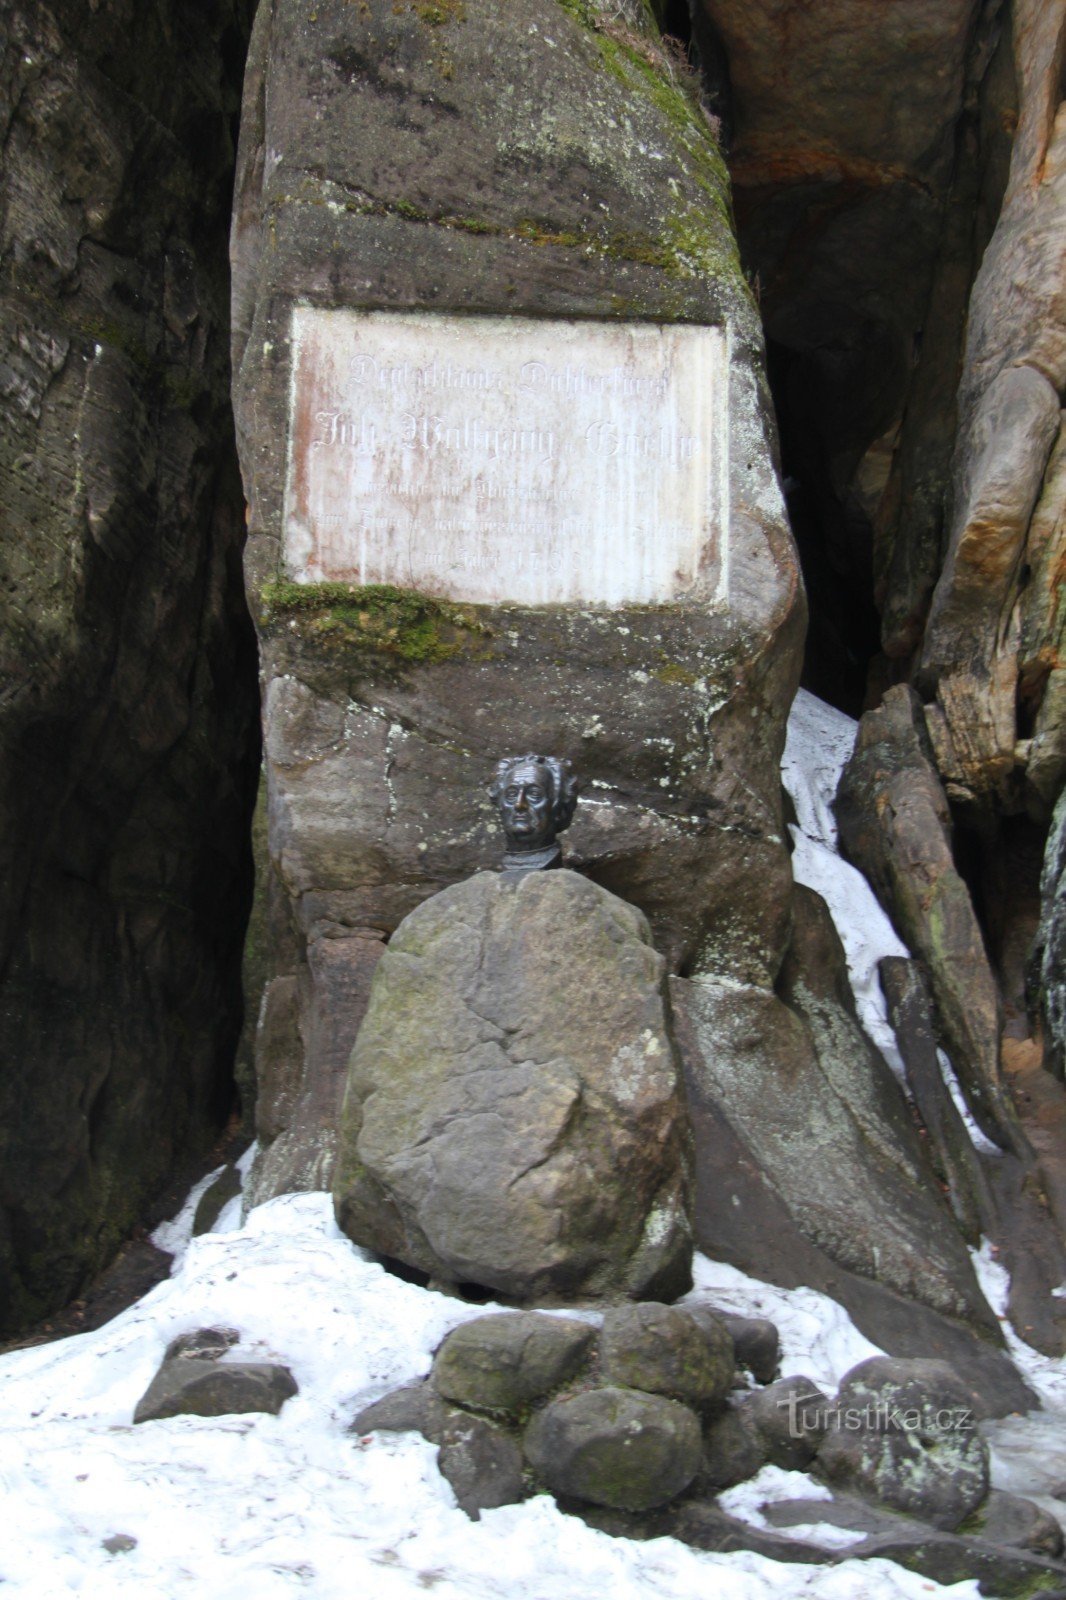 Adršpach の JWGoethe の記念碑 - ゲーテの銘板